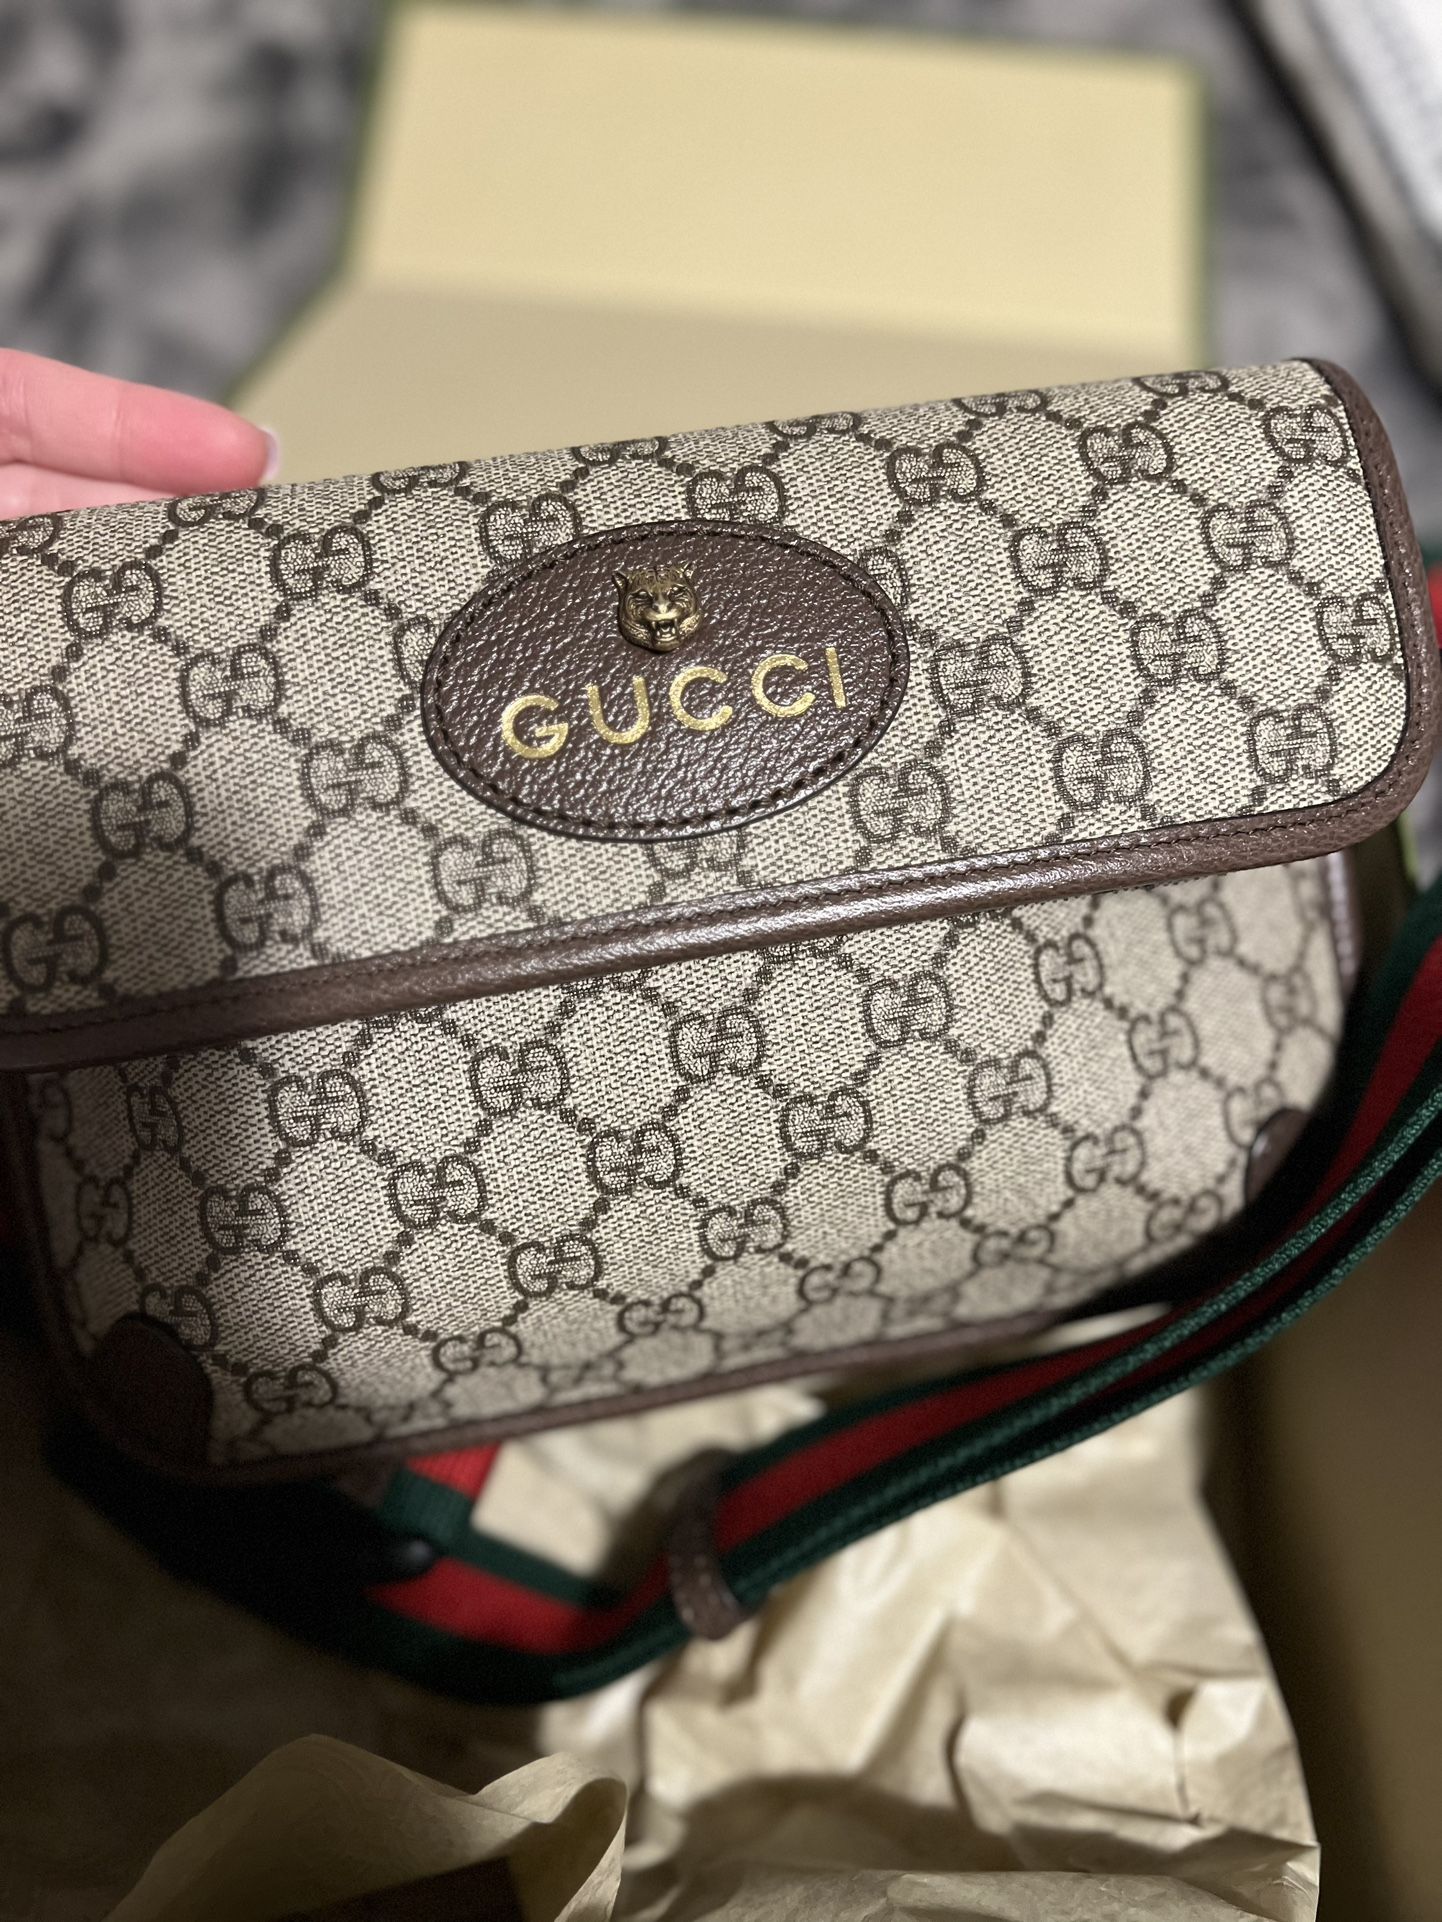 gucci belt bag